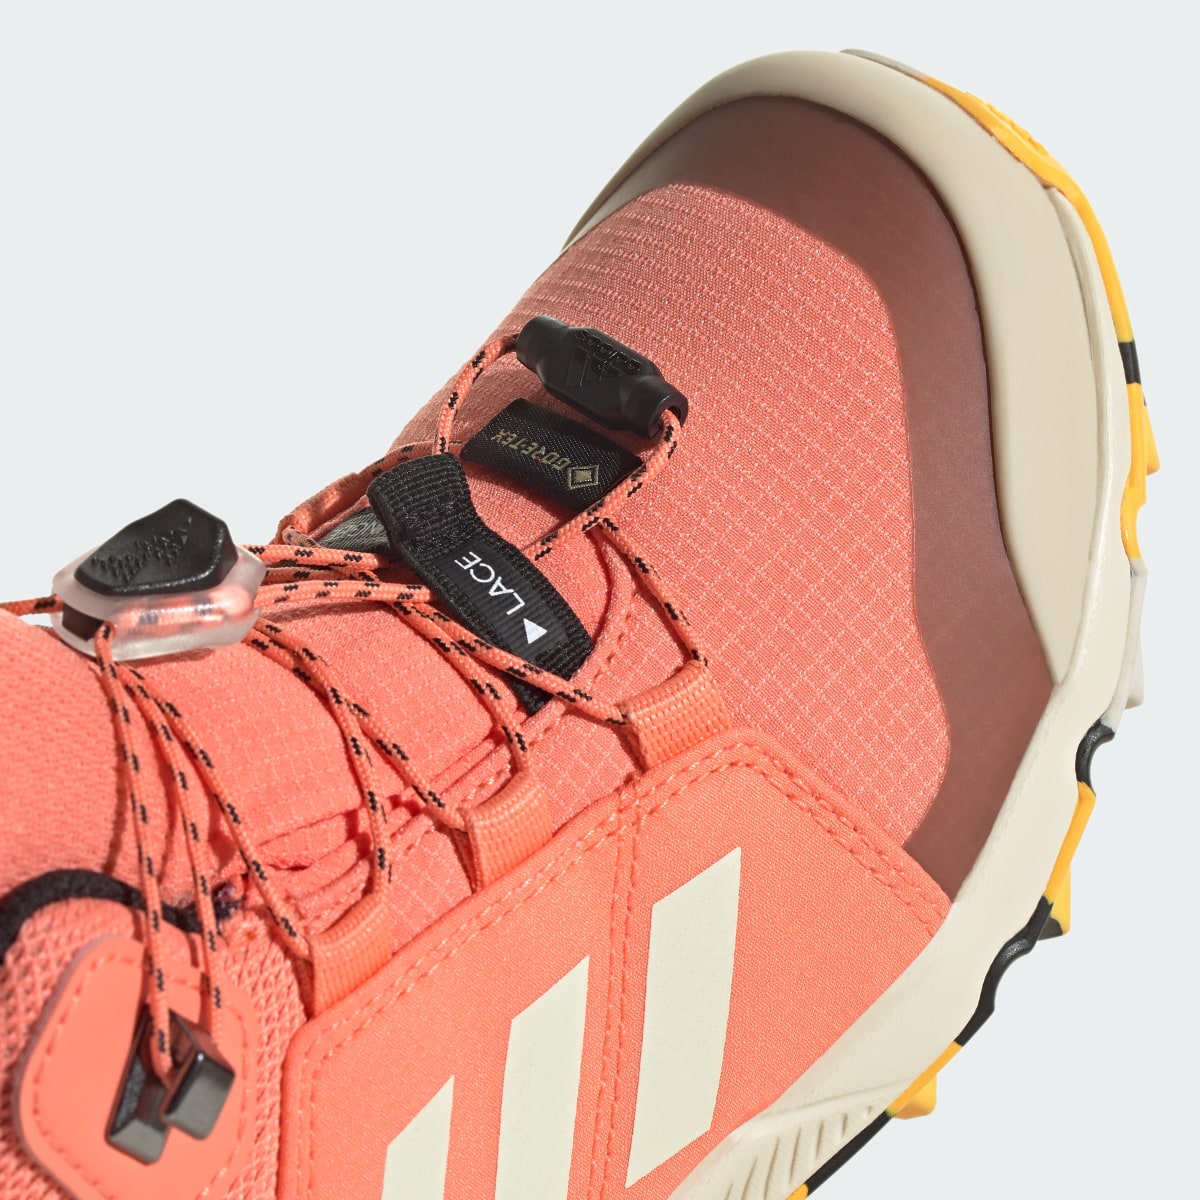 Adidas Sapatilhas de Caminhada GORE-TEX Organiser Mid. 11